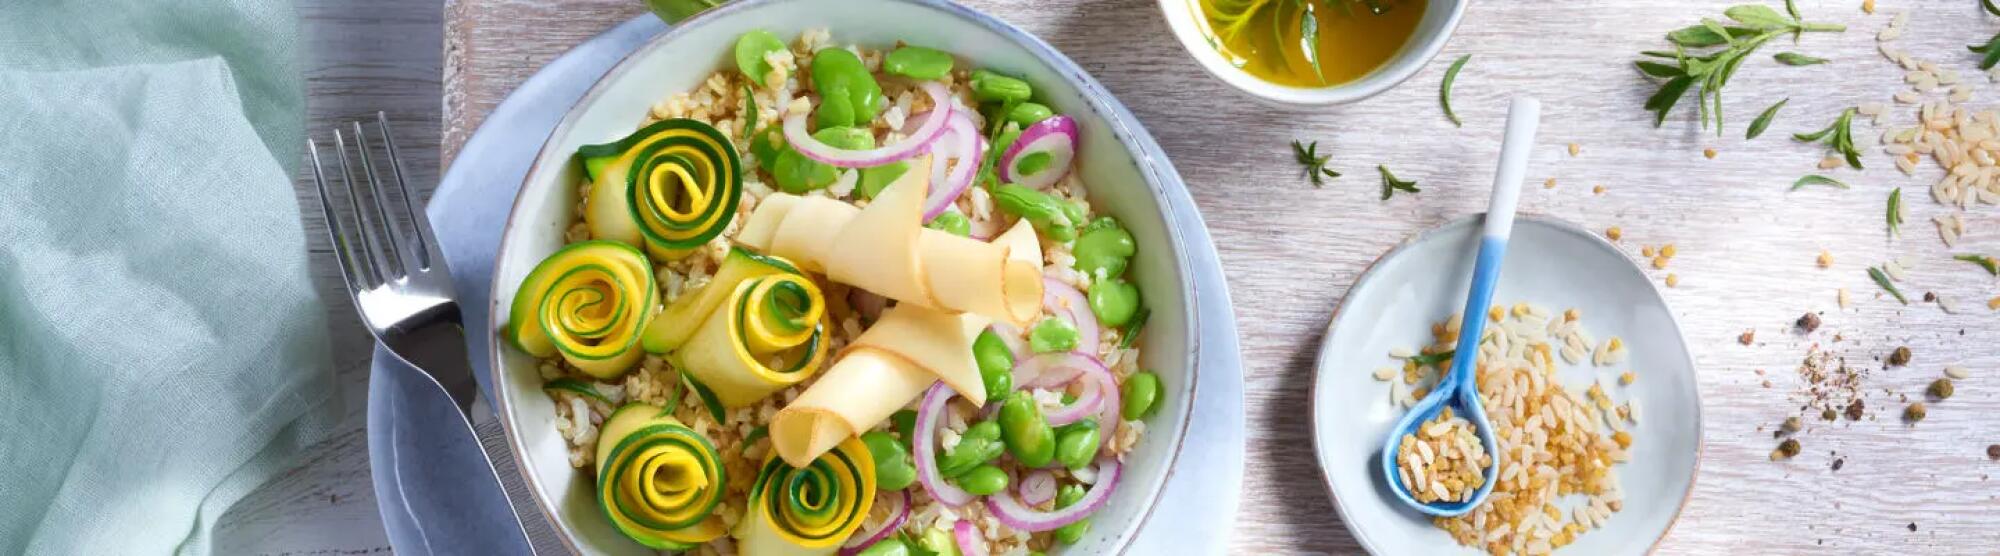 Recette : Salade complète aux céréales, légumes et fromage